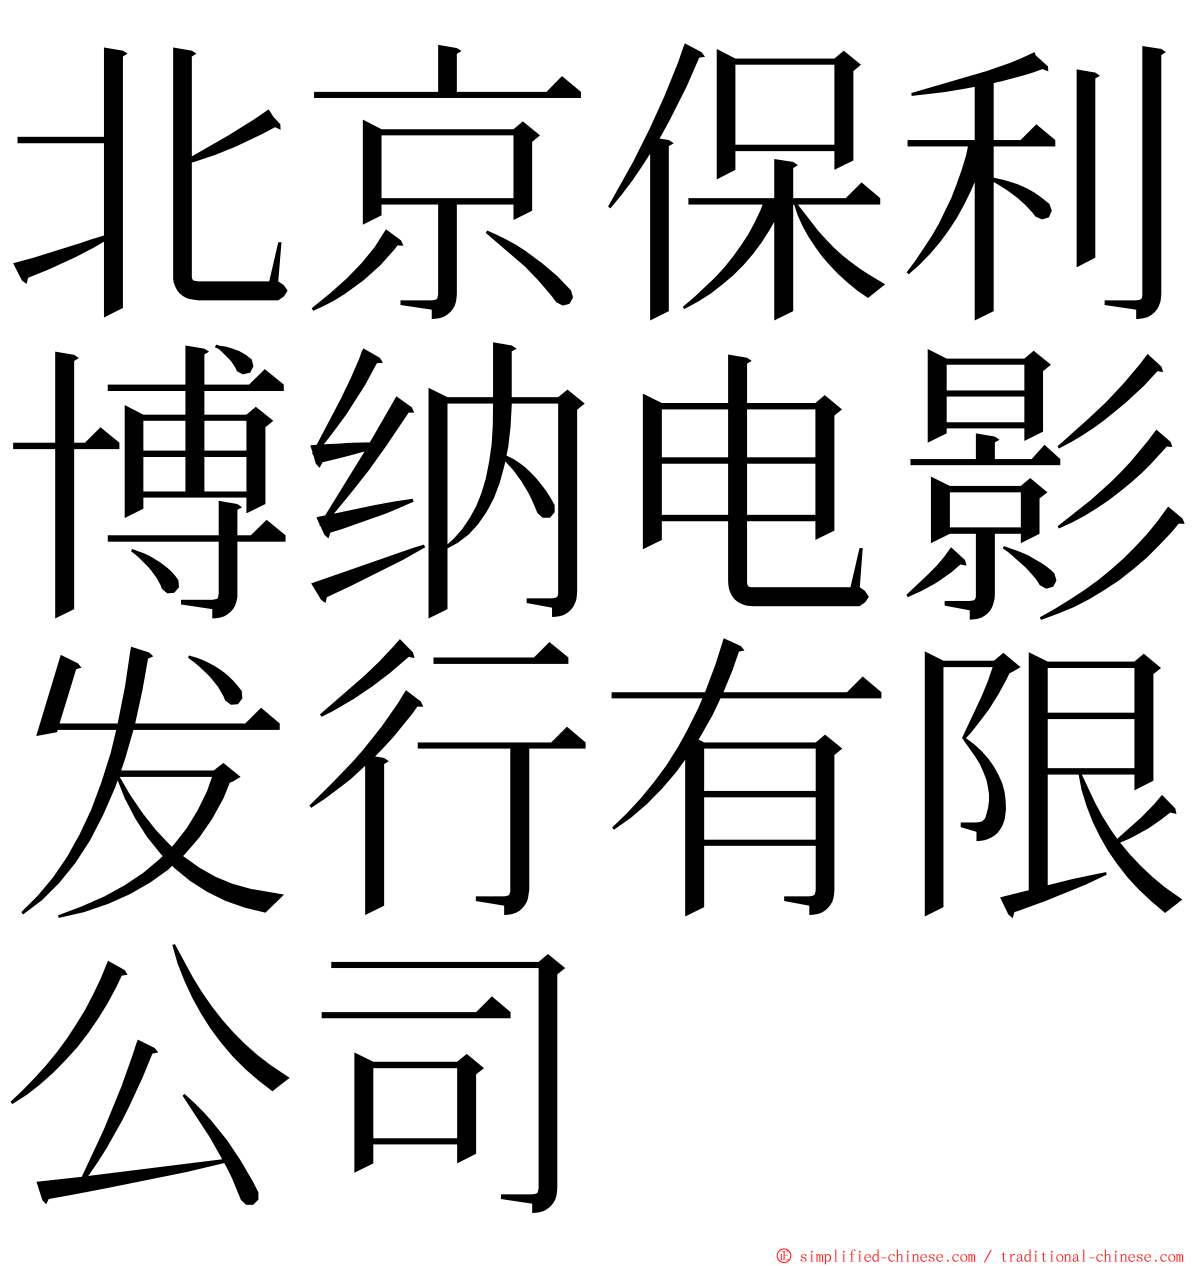 北京保利博纳电影发行有限公司 ming font